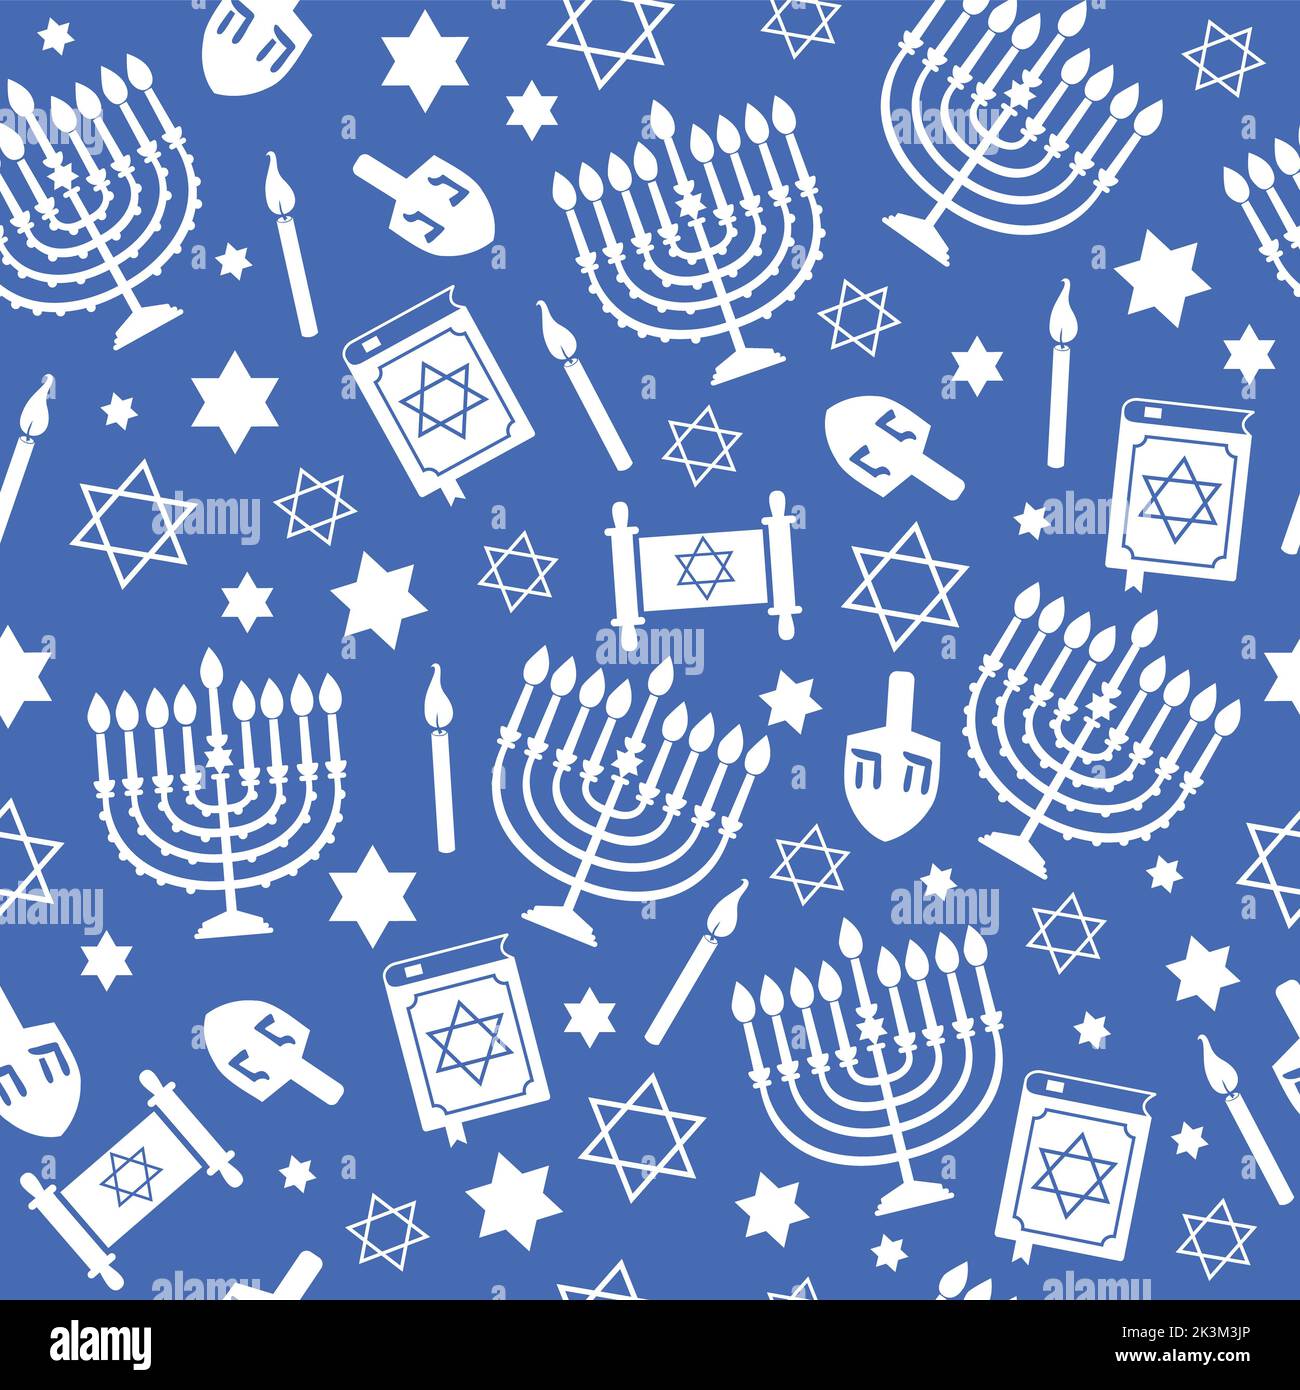 Hanukkah Wallpaper (41+ images)